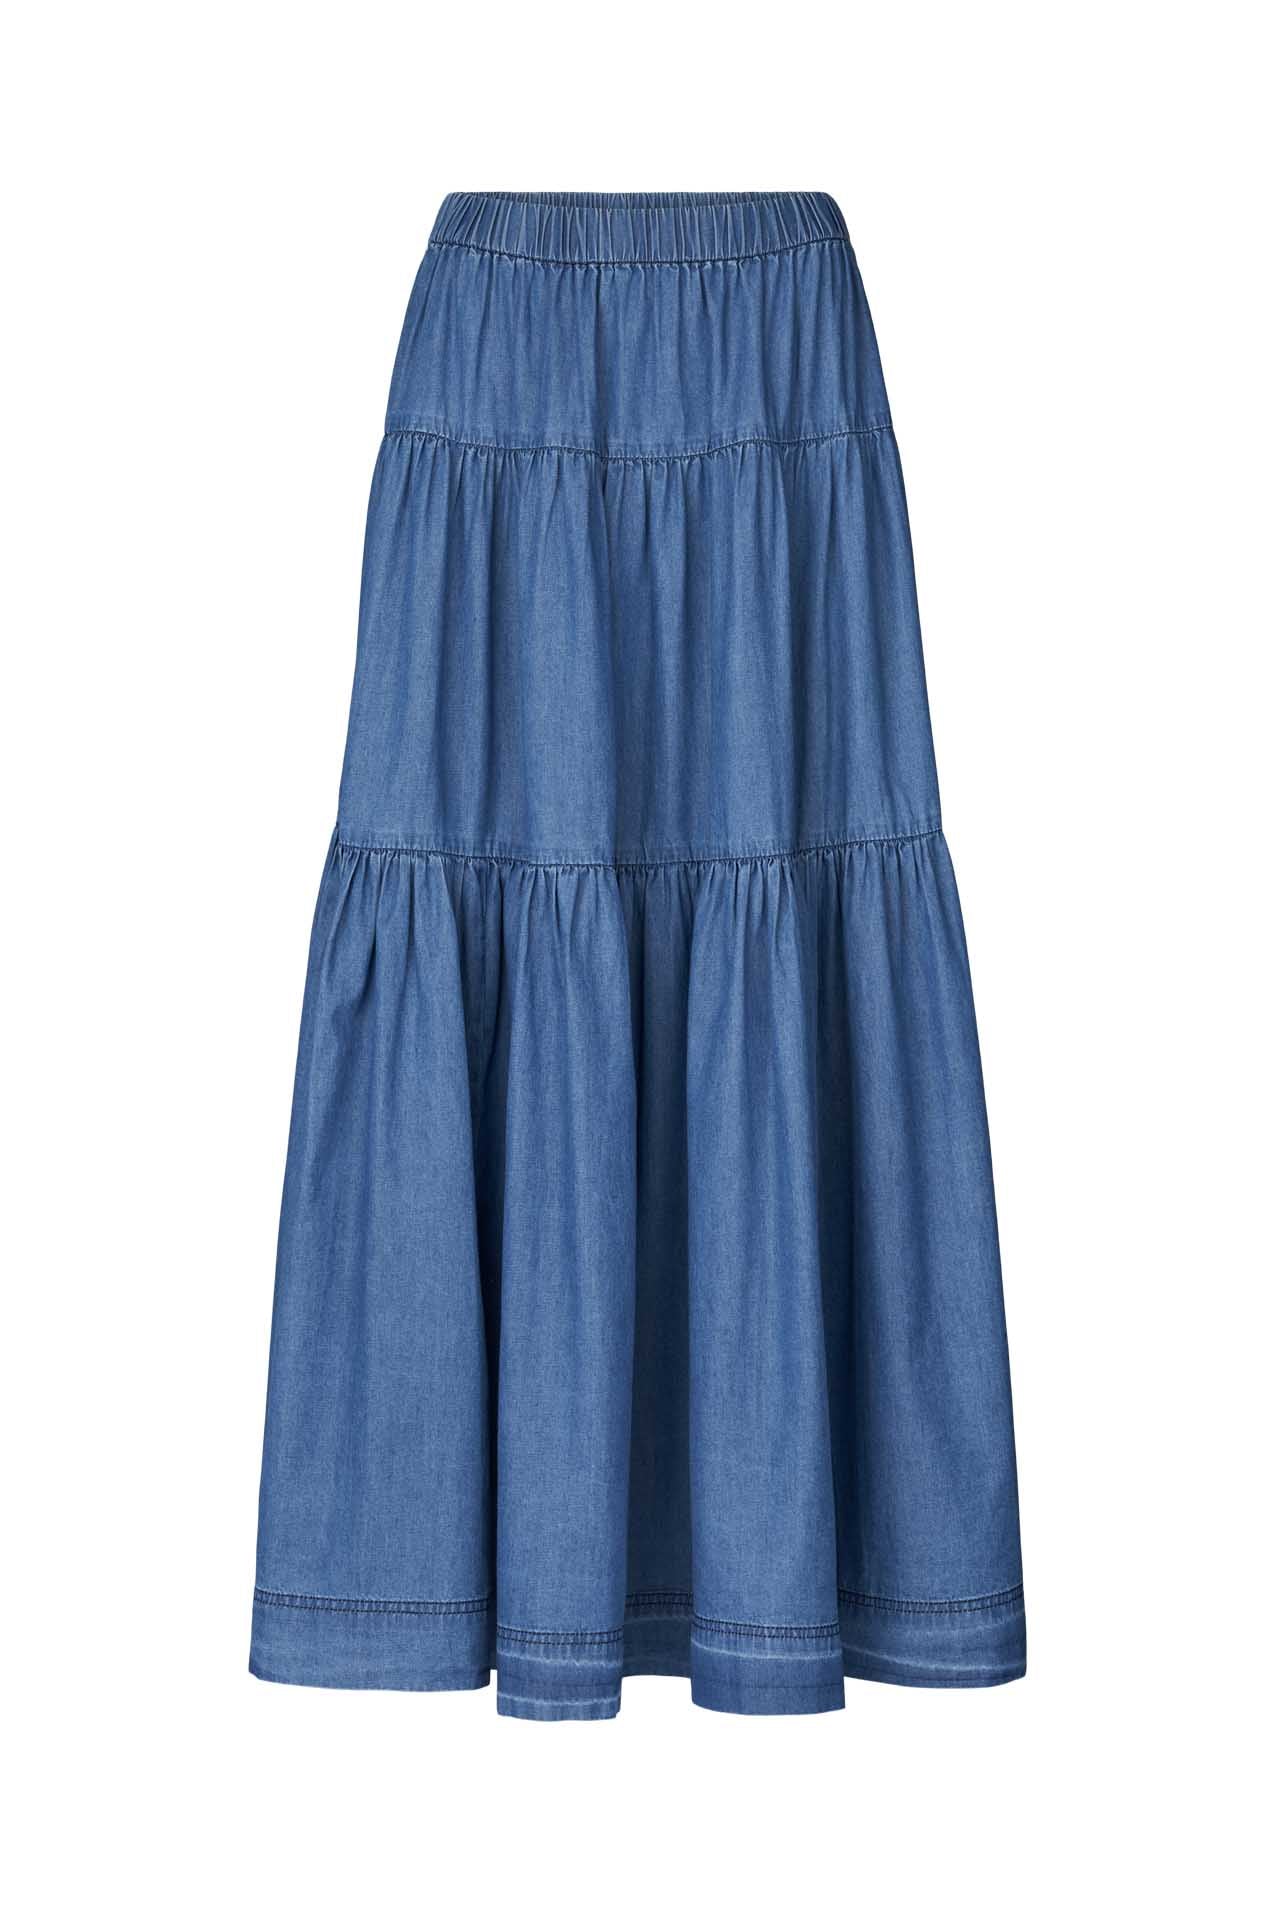 Lollys Laundry Sunset Skirt - Blue